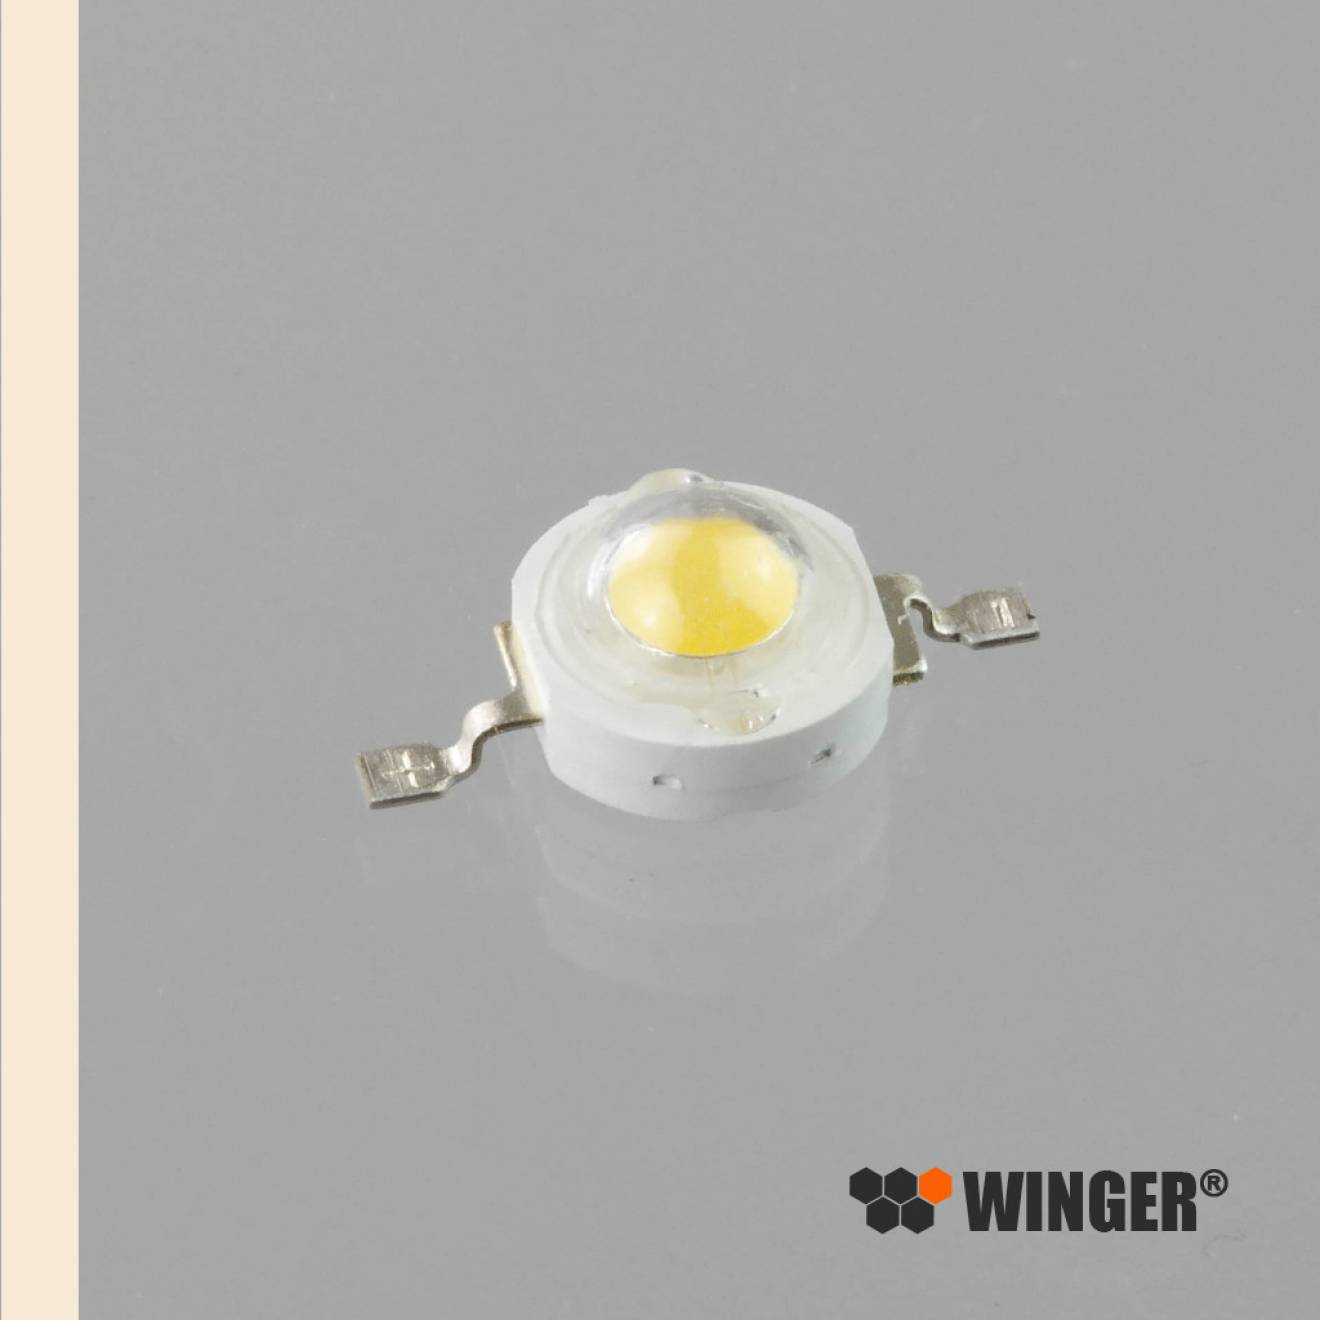 WINGER® WEPWW1-E1 Power LED Emitter warmweiß (2.800K - 3.000K) 1W - 90 Lumen